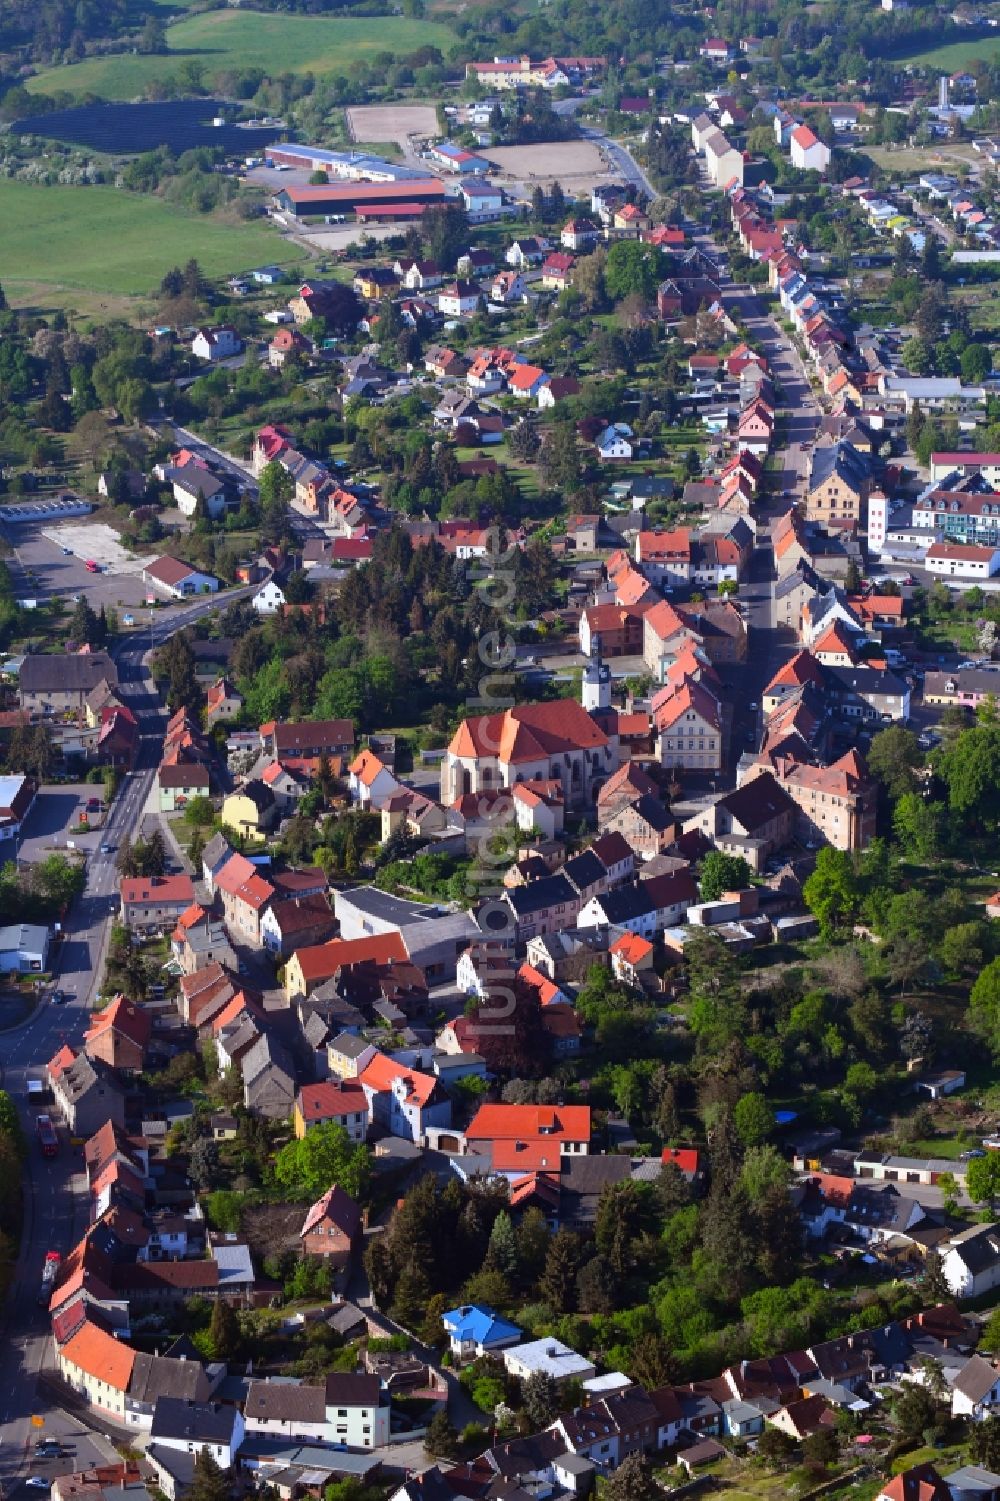 Luftbild Mansfeld - Ortsansicht in Mansfeld im Bundesland Sachsen-Anhalt, Deutschland